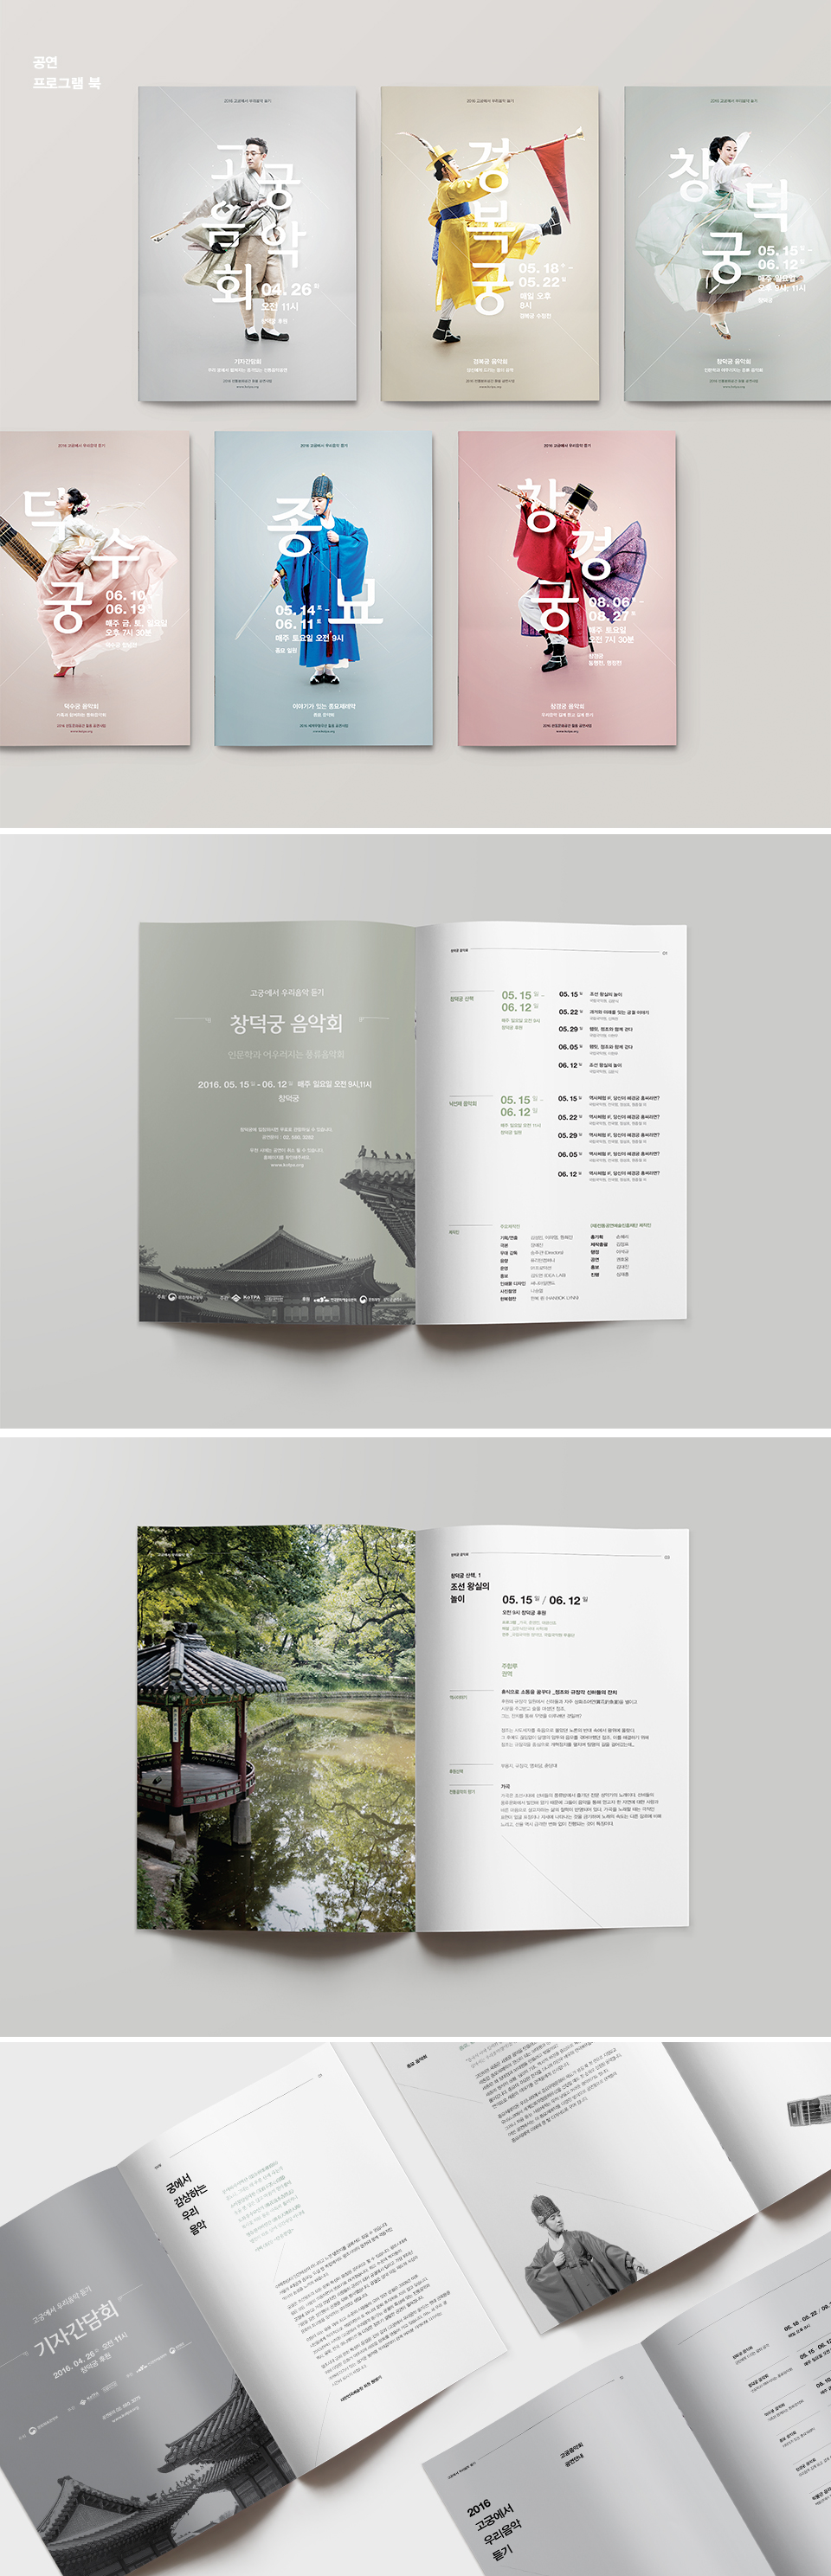 韩国古典音乐会视觉全案设计